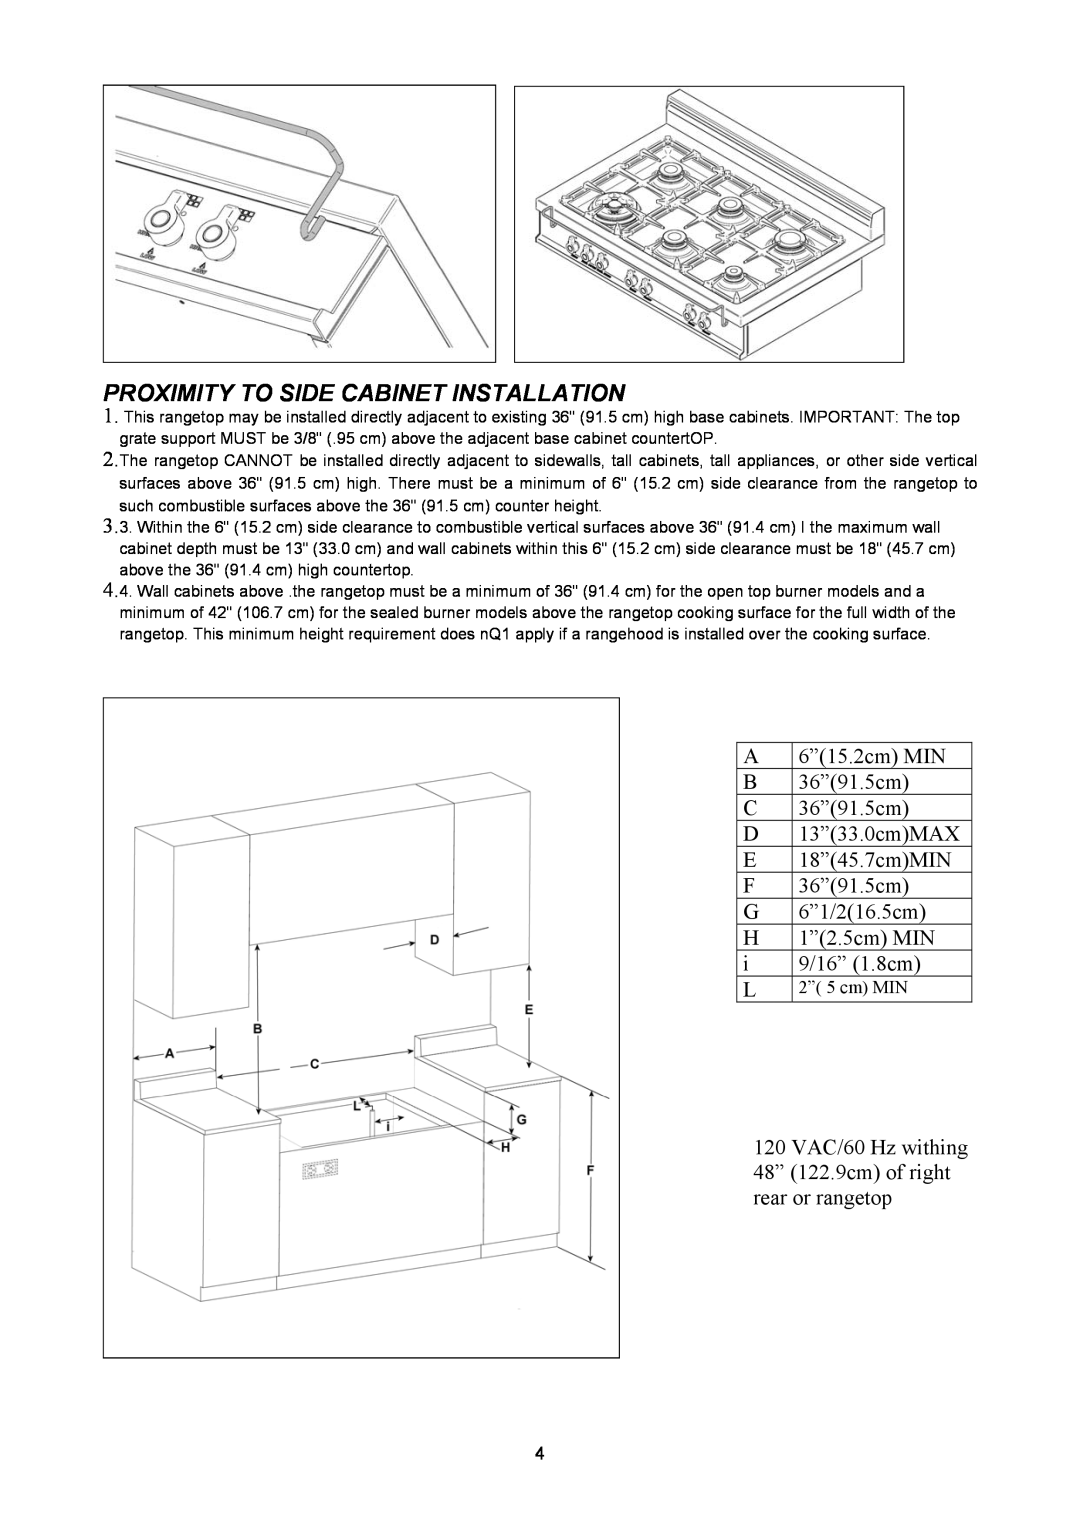 Bertazzoni C36500X, C36600X, Z36600X, Z36500X manual Proximity To Side Cabinet Installation, 2” 5 cm MIN 